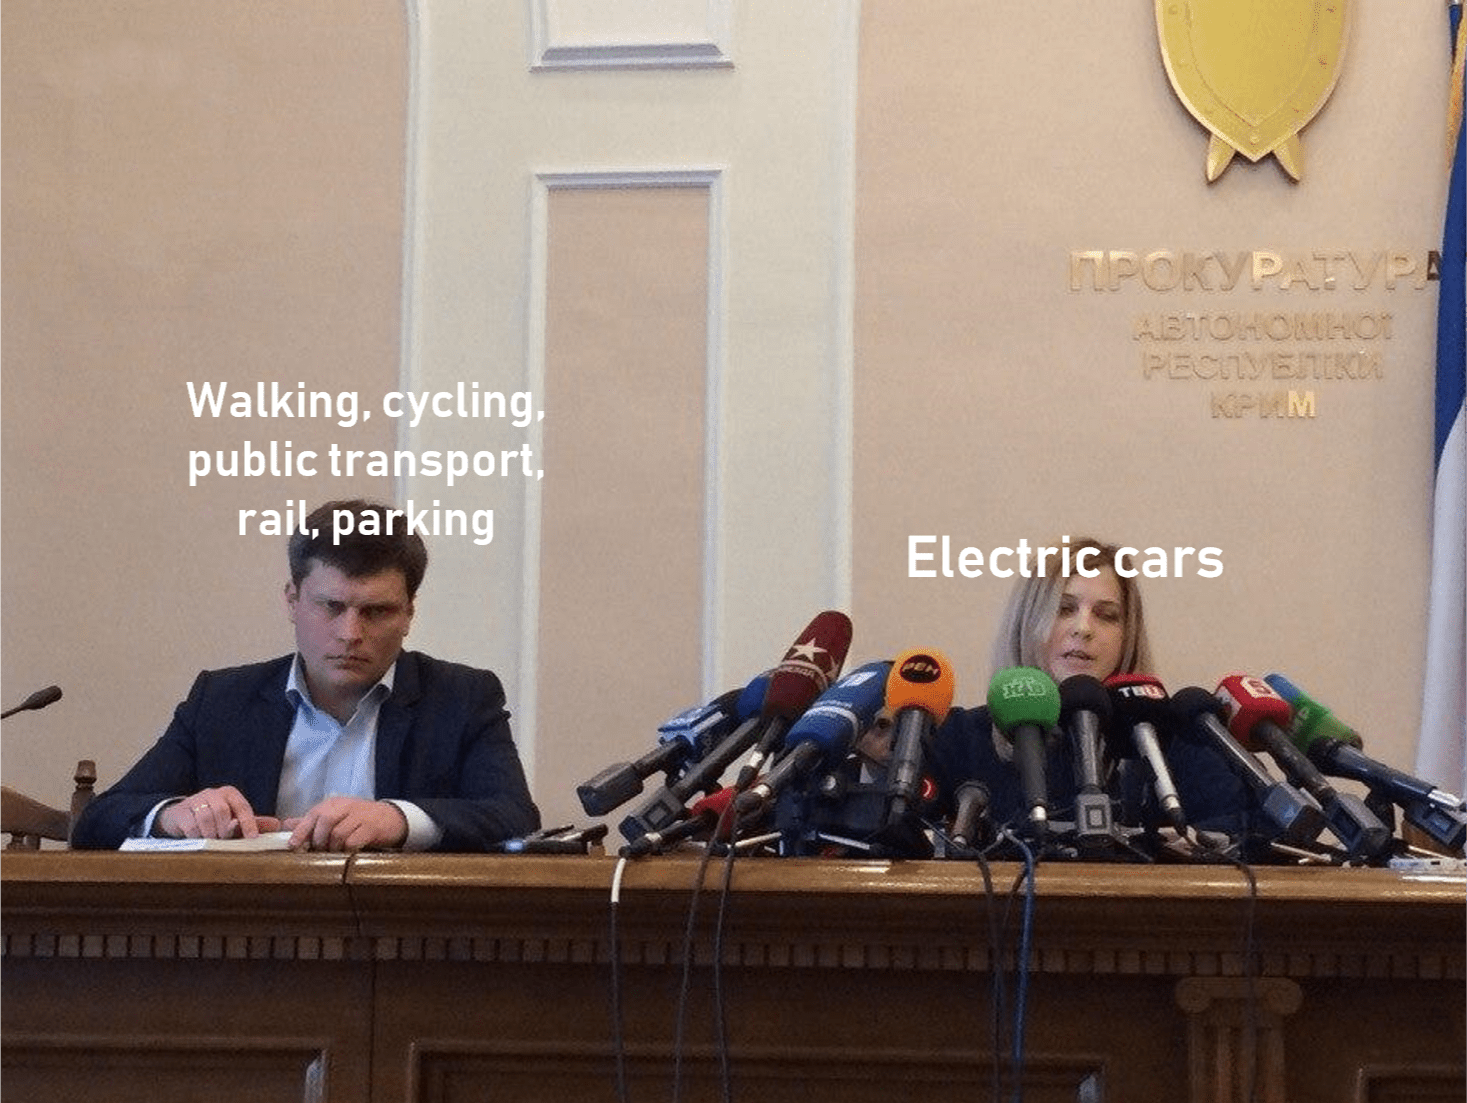 Media electic cars